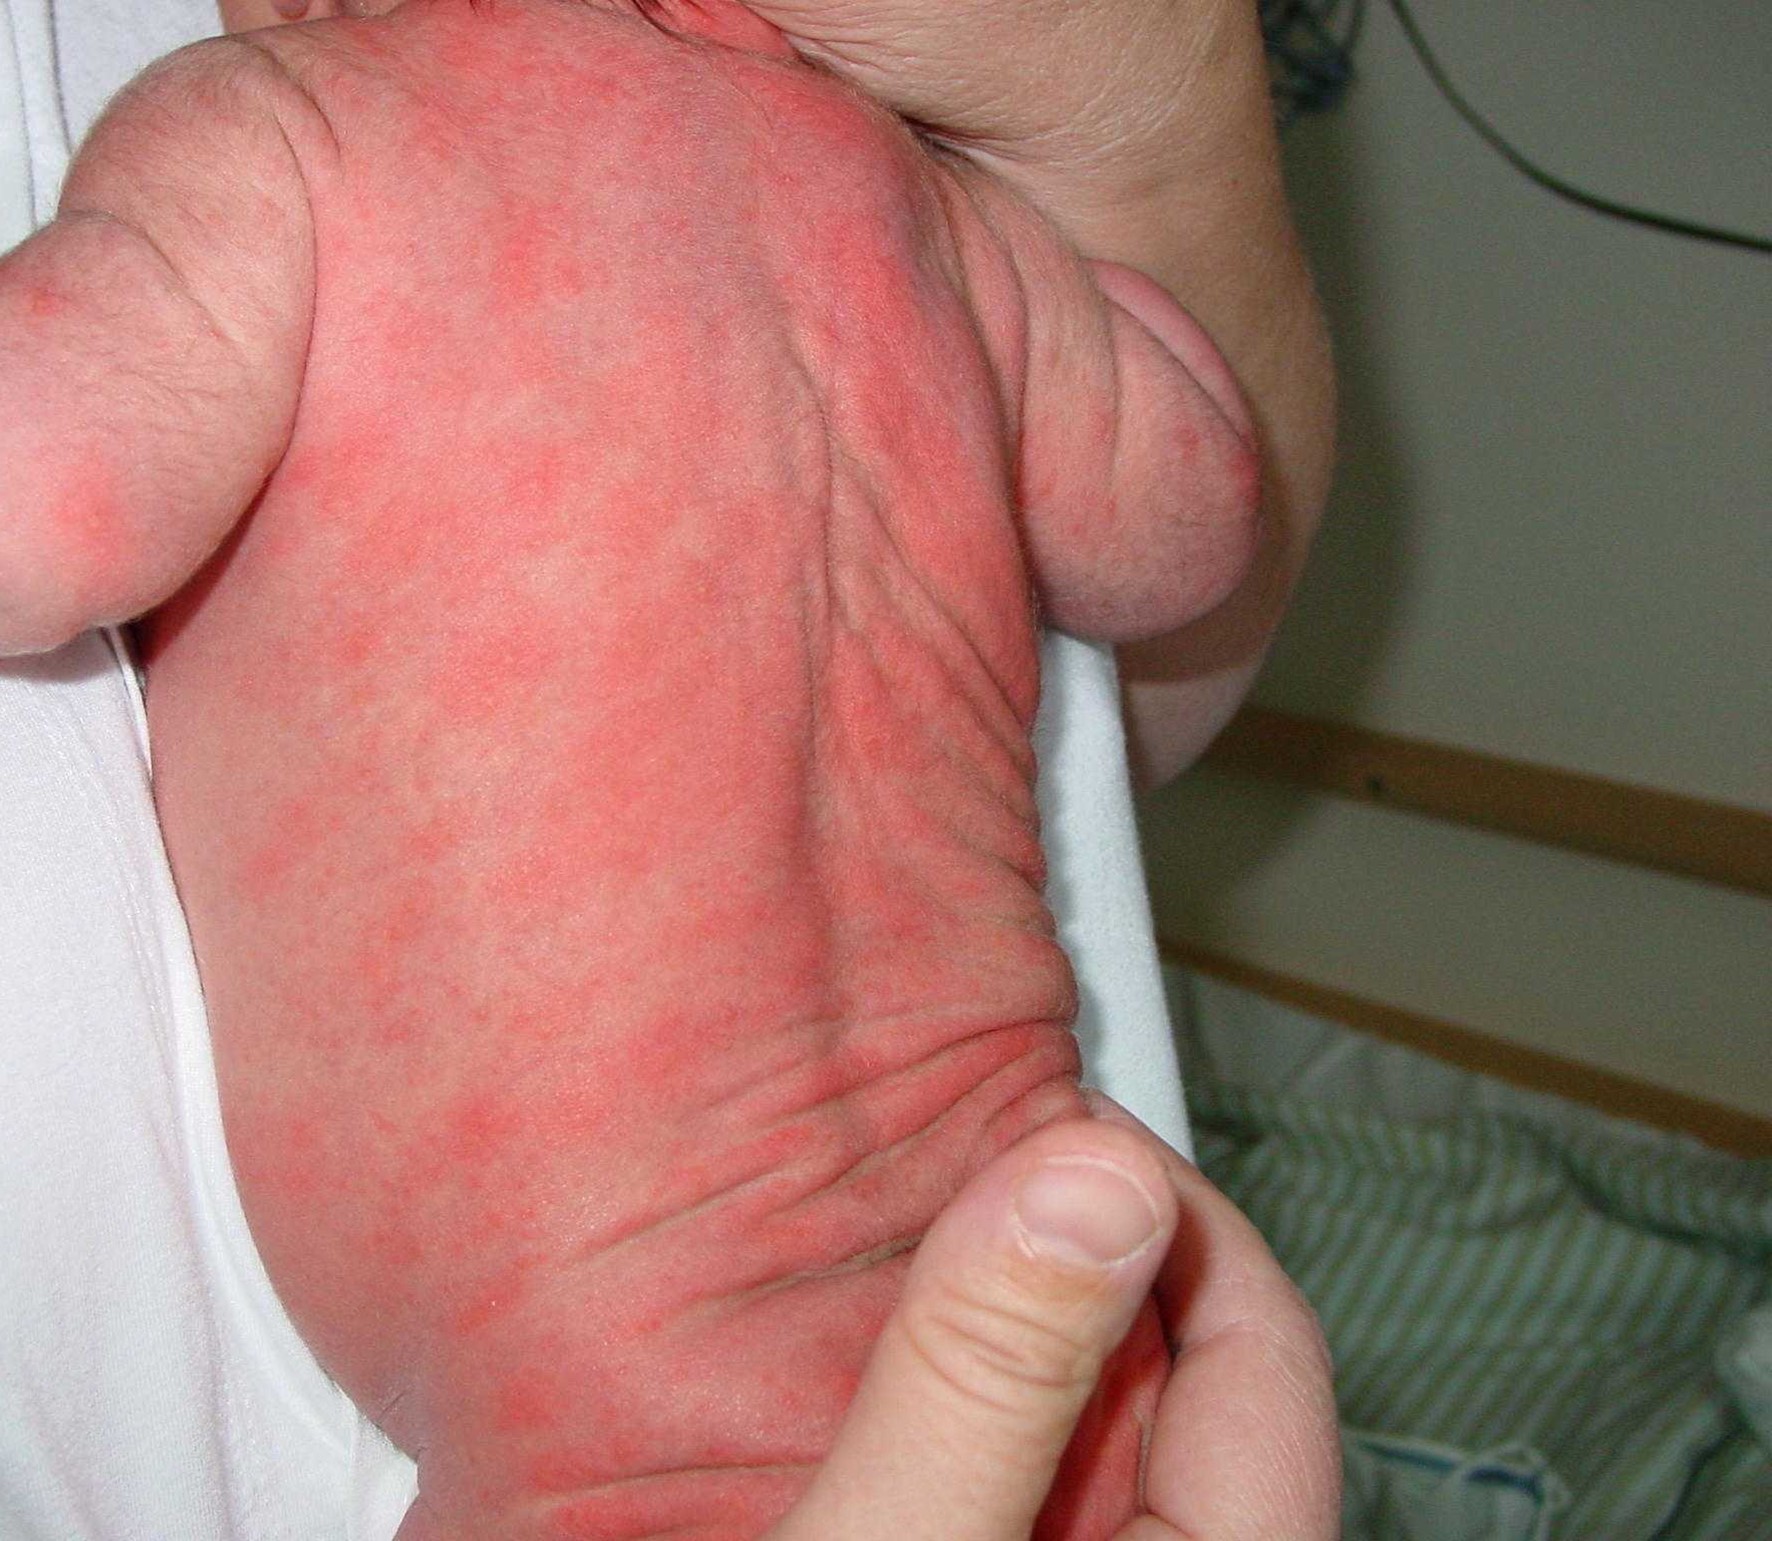 Ett naket spädbarn ligger med magen mot bröstet på en vuxen person. Barnets rygg är täckt av röda utslag.